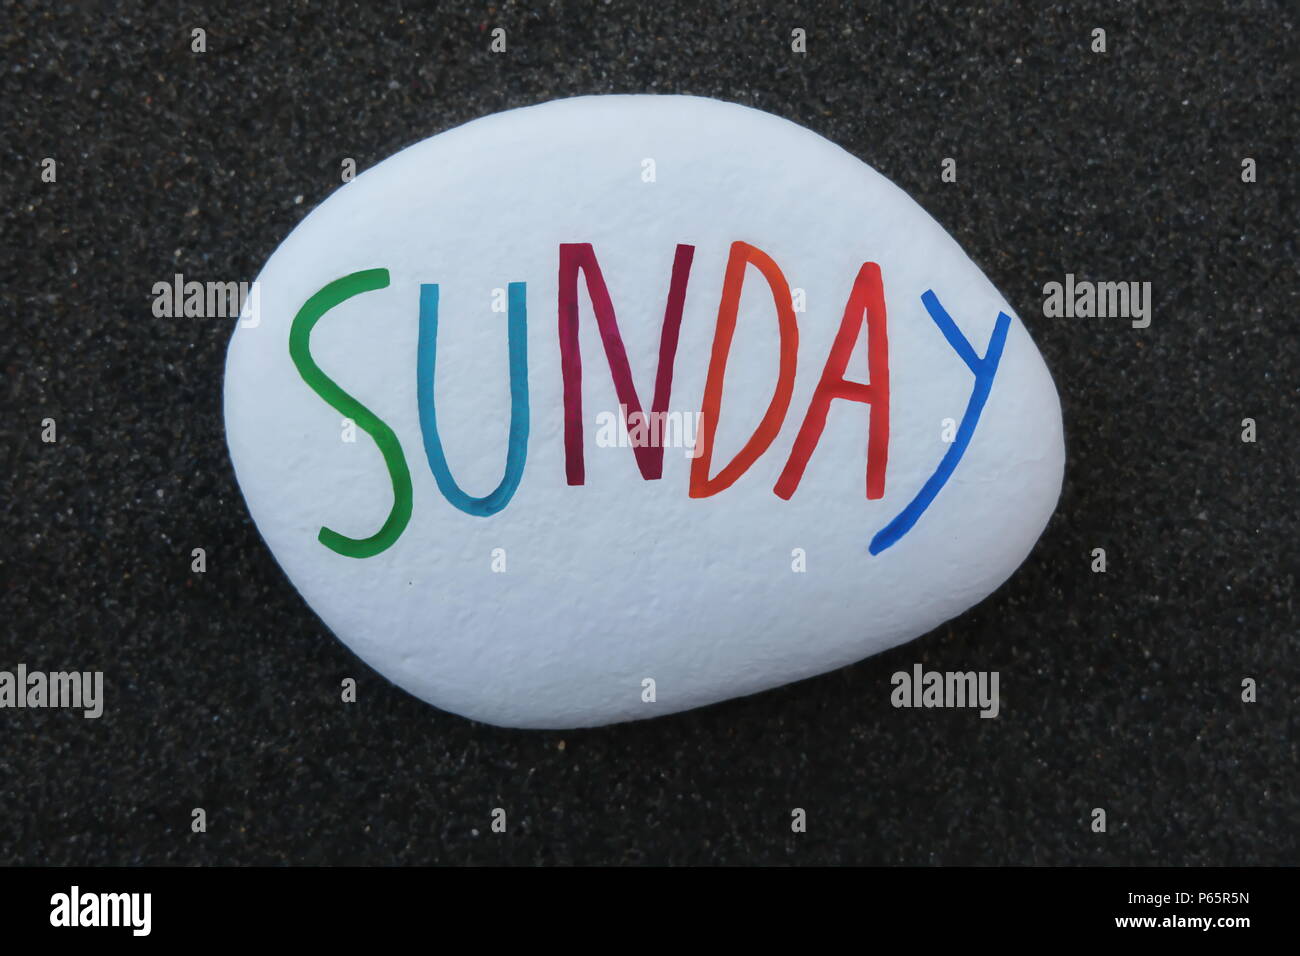 Sonntag, siebter Wochentag, auf einen weißen Stein über schwarzem vulkanischen Sand gehauen und gemalt Stockfoto